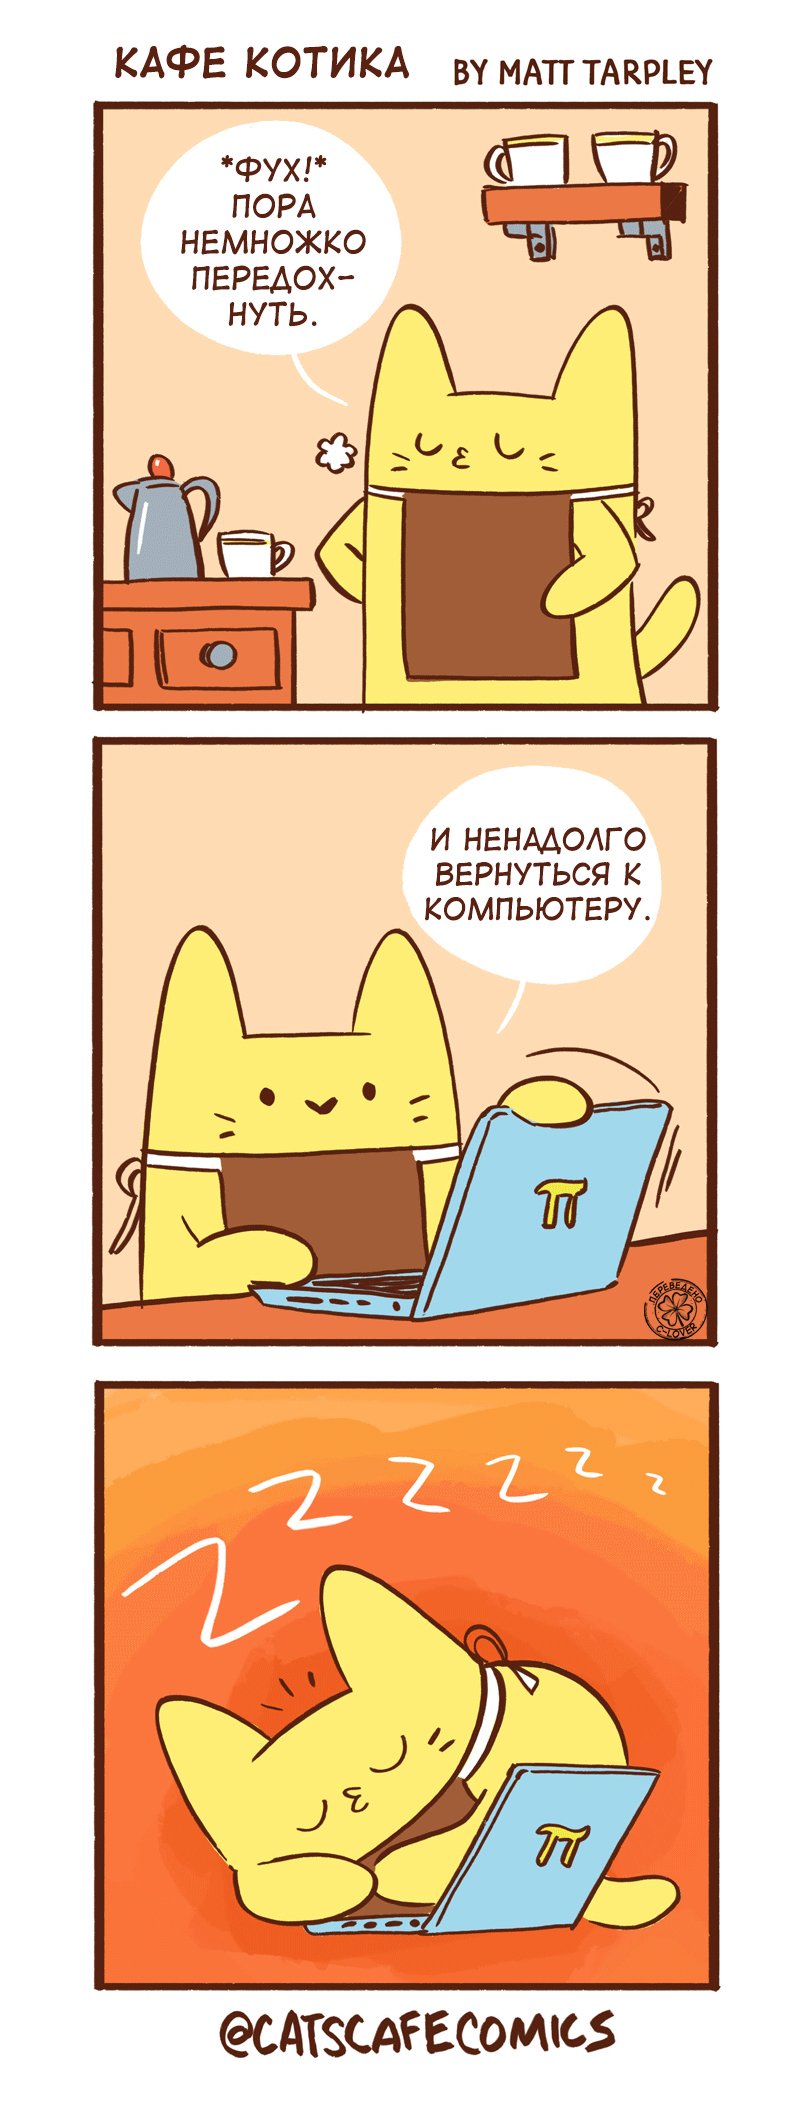 Котик пользуется компьютером.